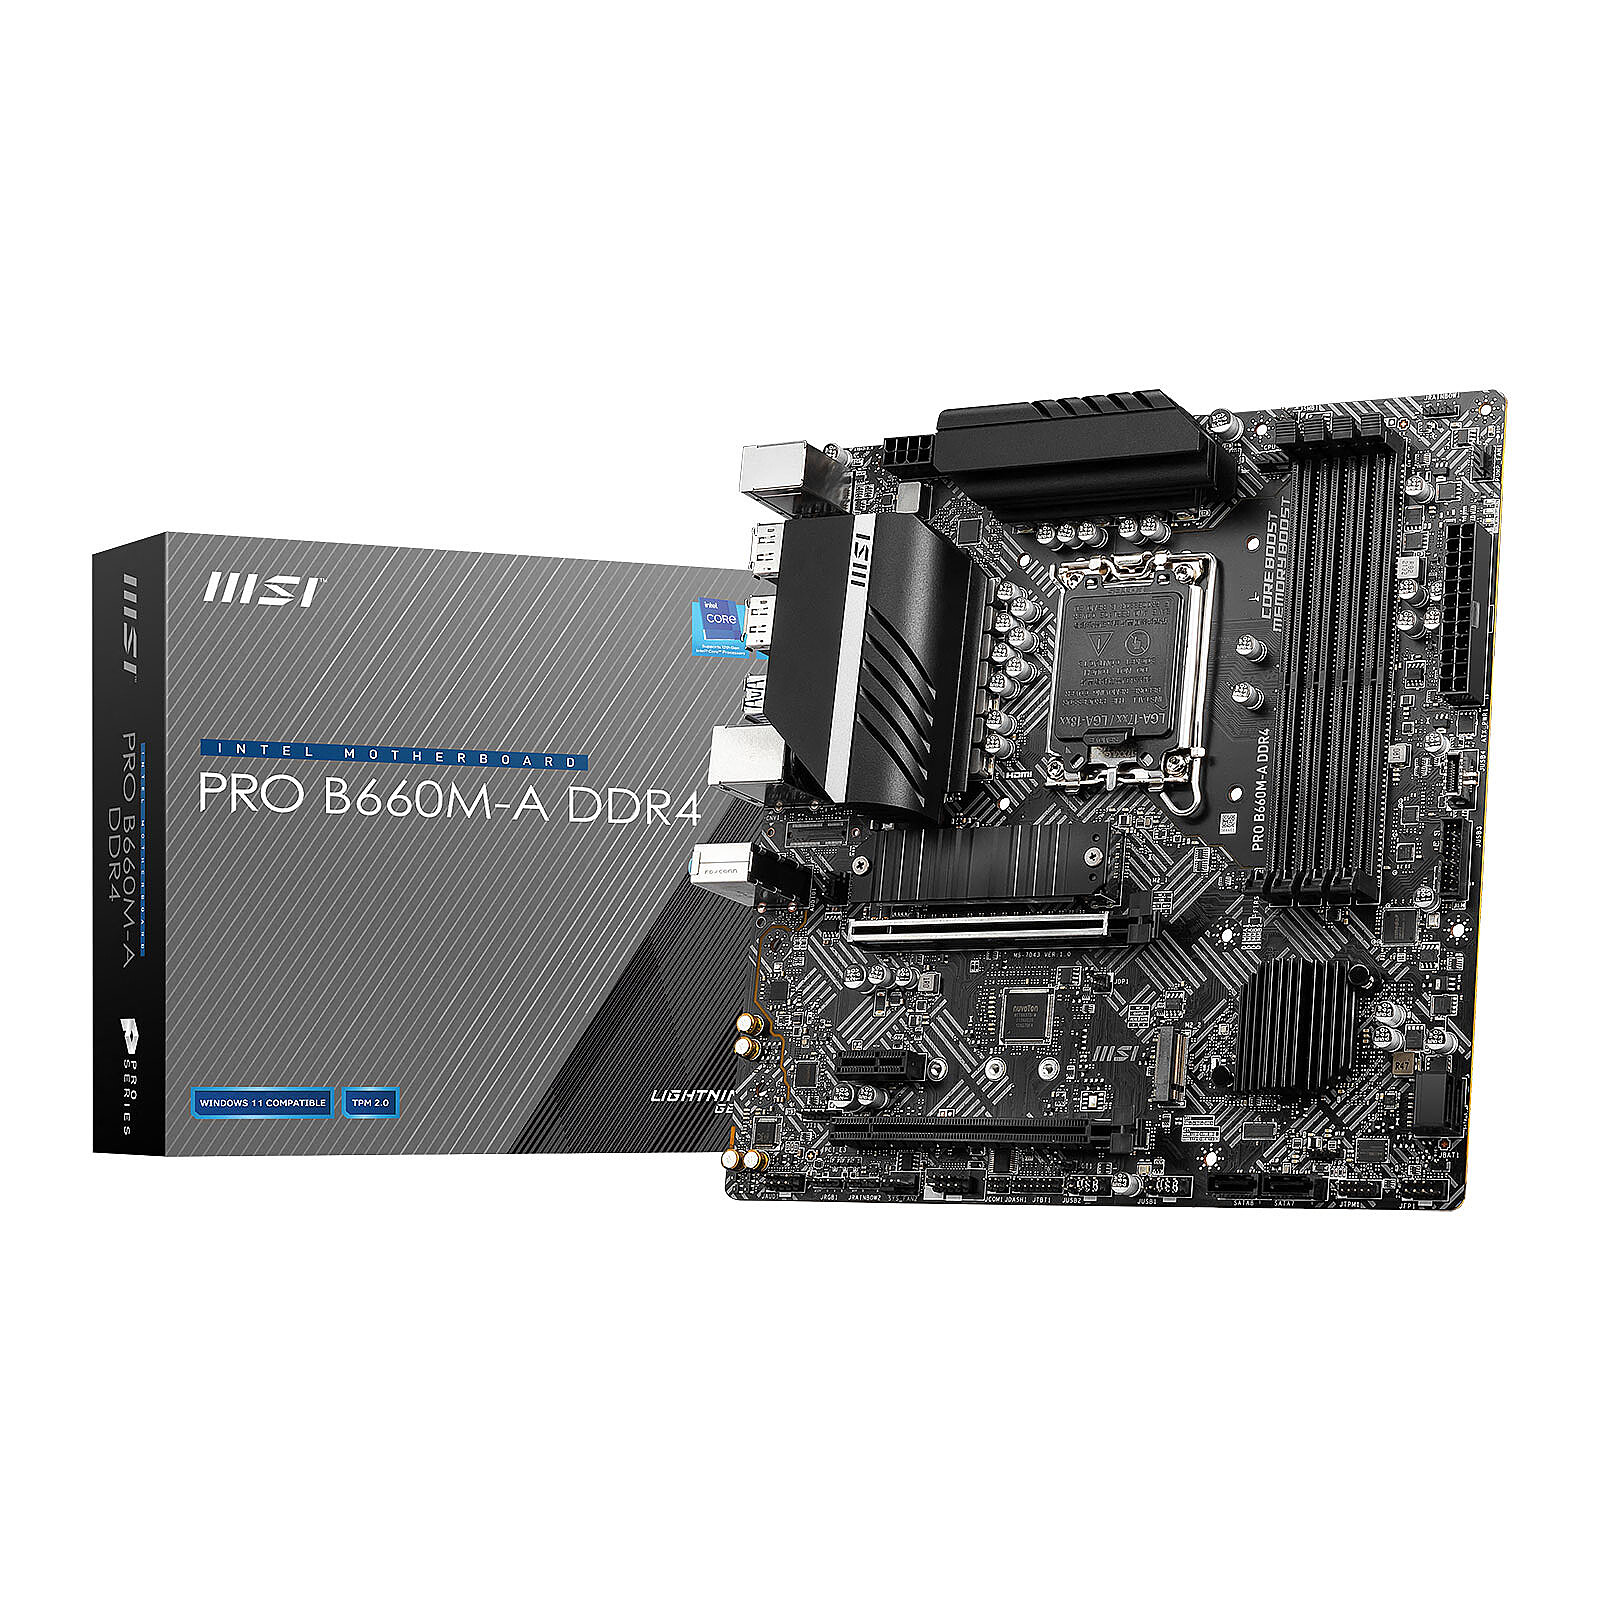 Upgrade - Choix carte mère pour Intel I5-11500 - Conseil d'achat - Hardware  - FORUM HardWare.fr